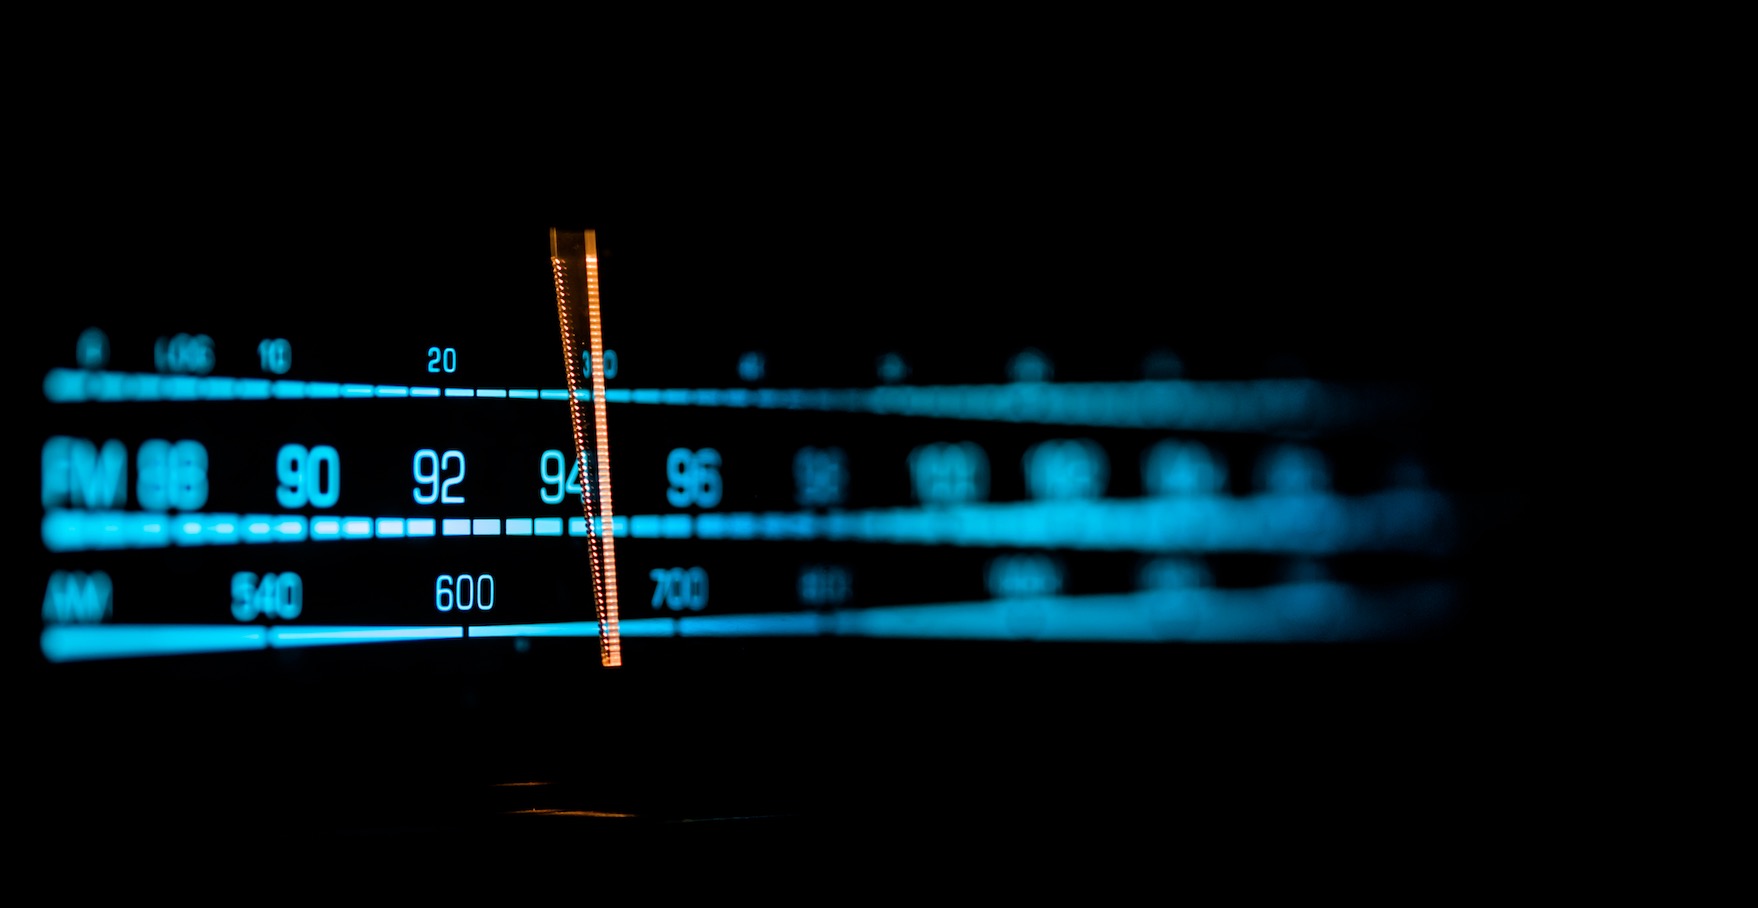 Étude MaRadio.be/IPSOS : le volume d'écoute de la FM est passé de 82% à 58% en quatre ans